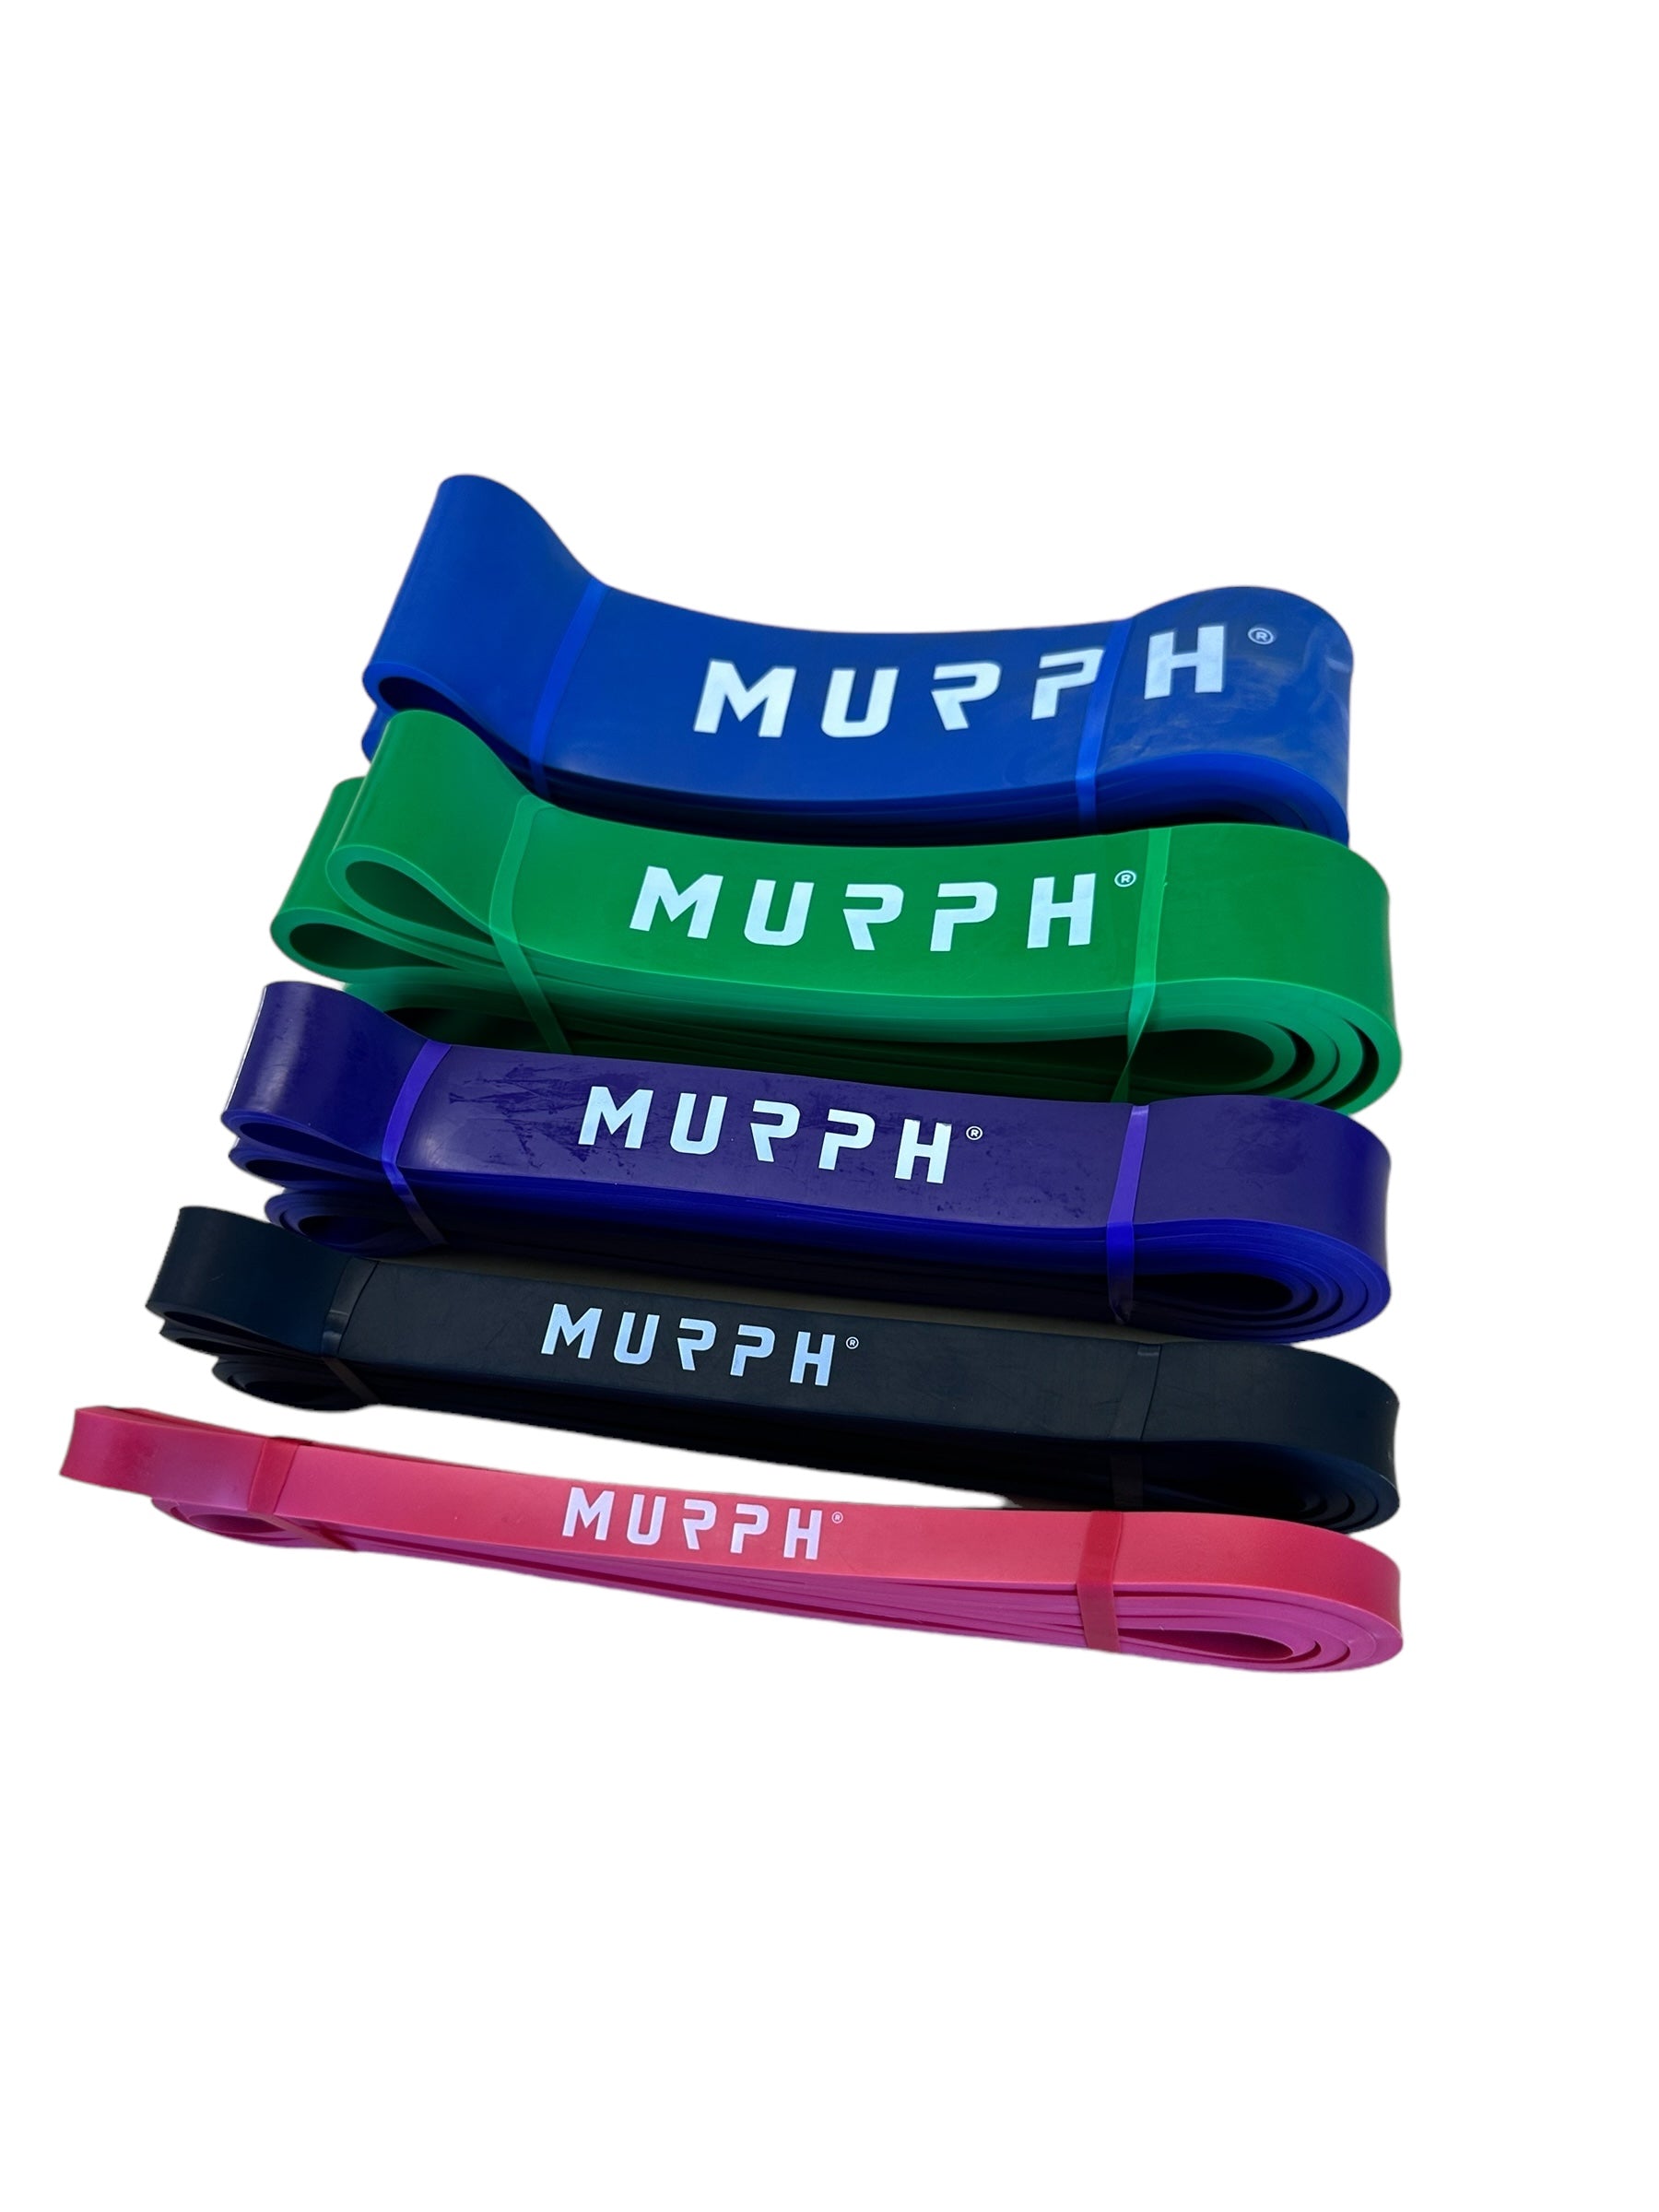 Murph Elastic Bands® – Murph Fitness